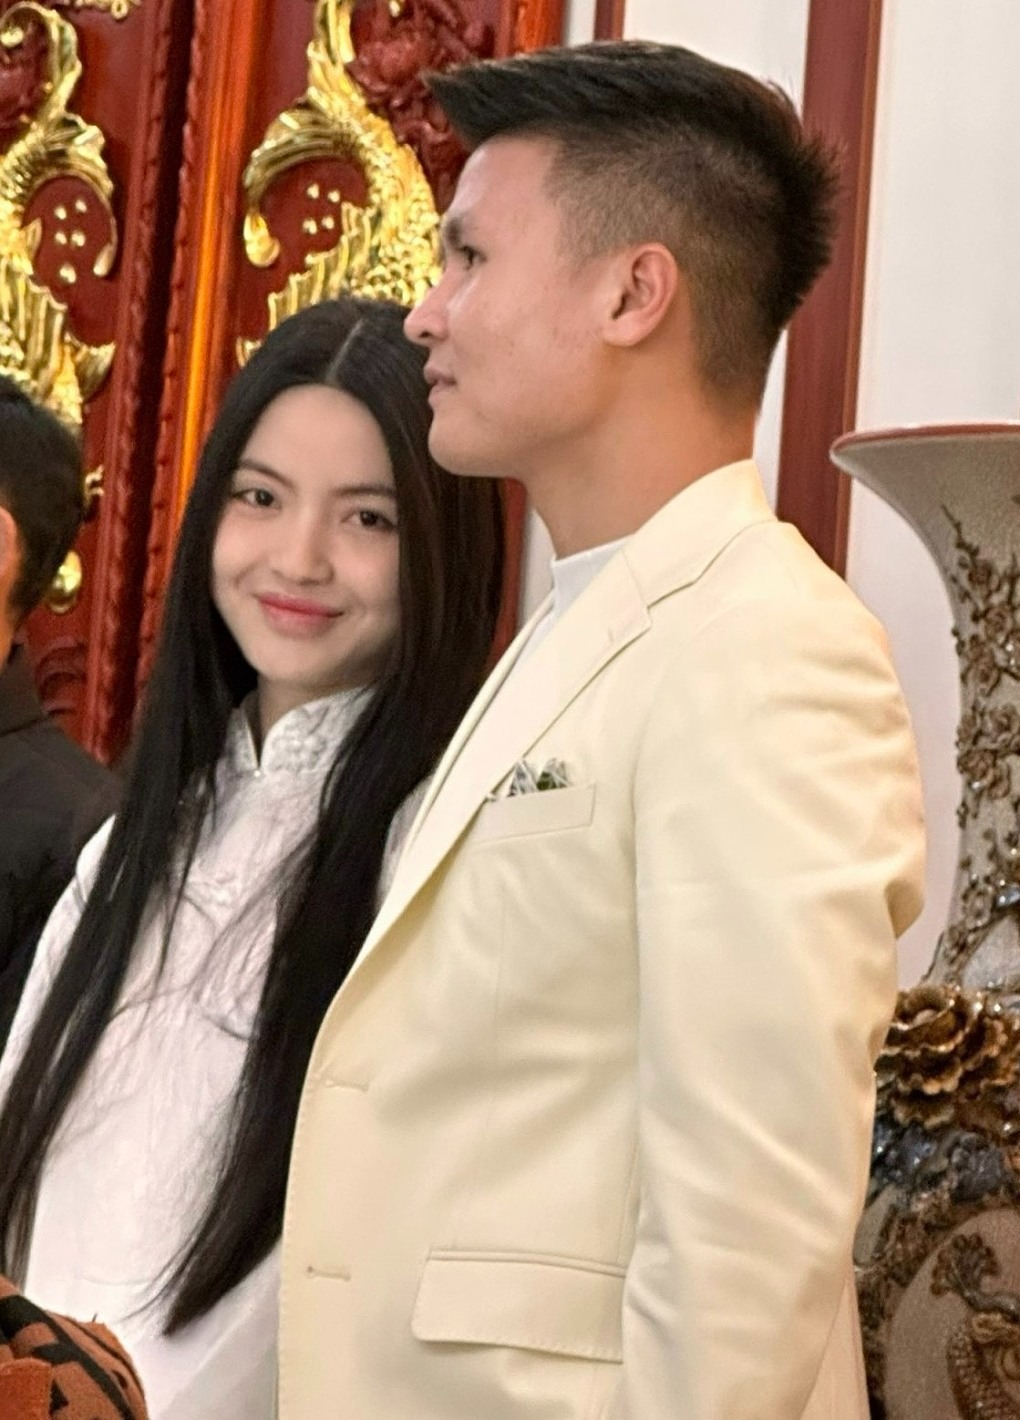 Ngày vui của Quang Hải và bạn gái Chu Thanh Huyền nhận được nhiều sự quan tâm